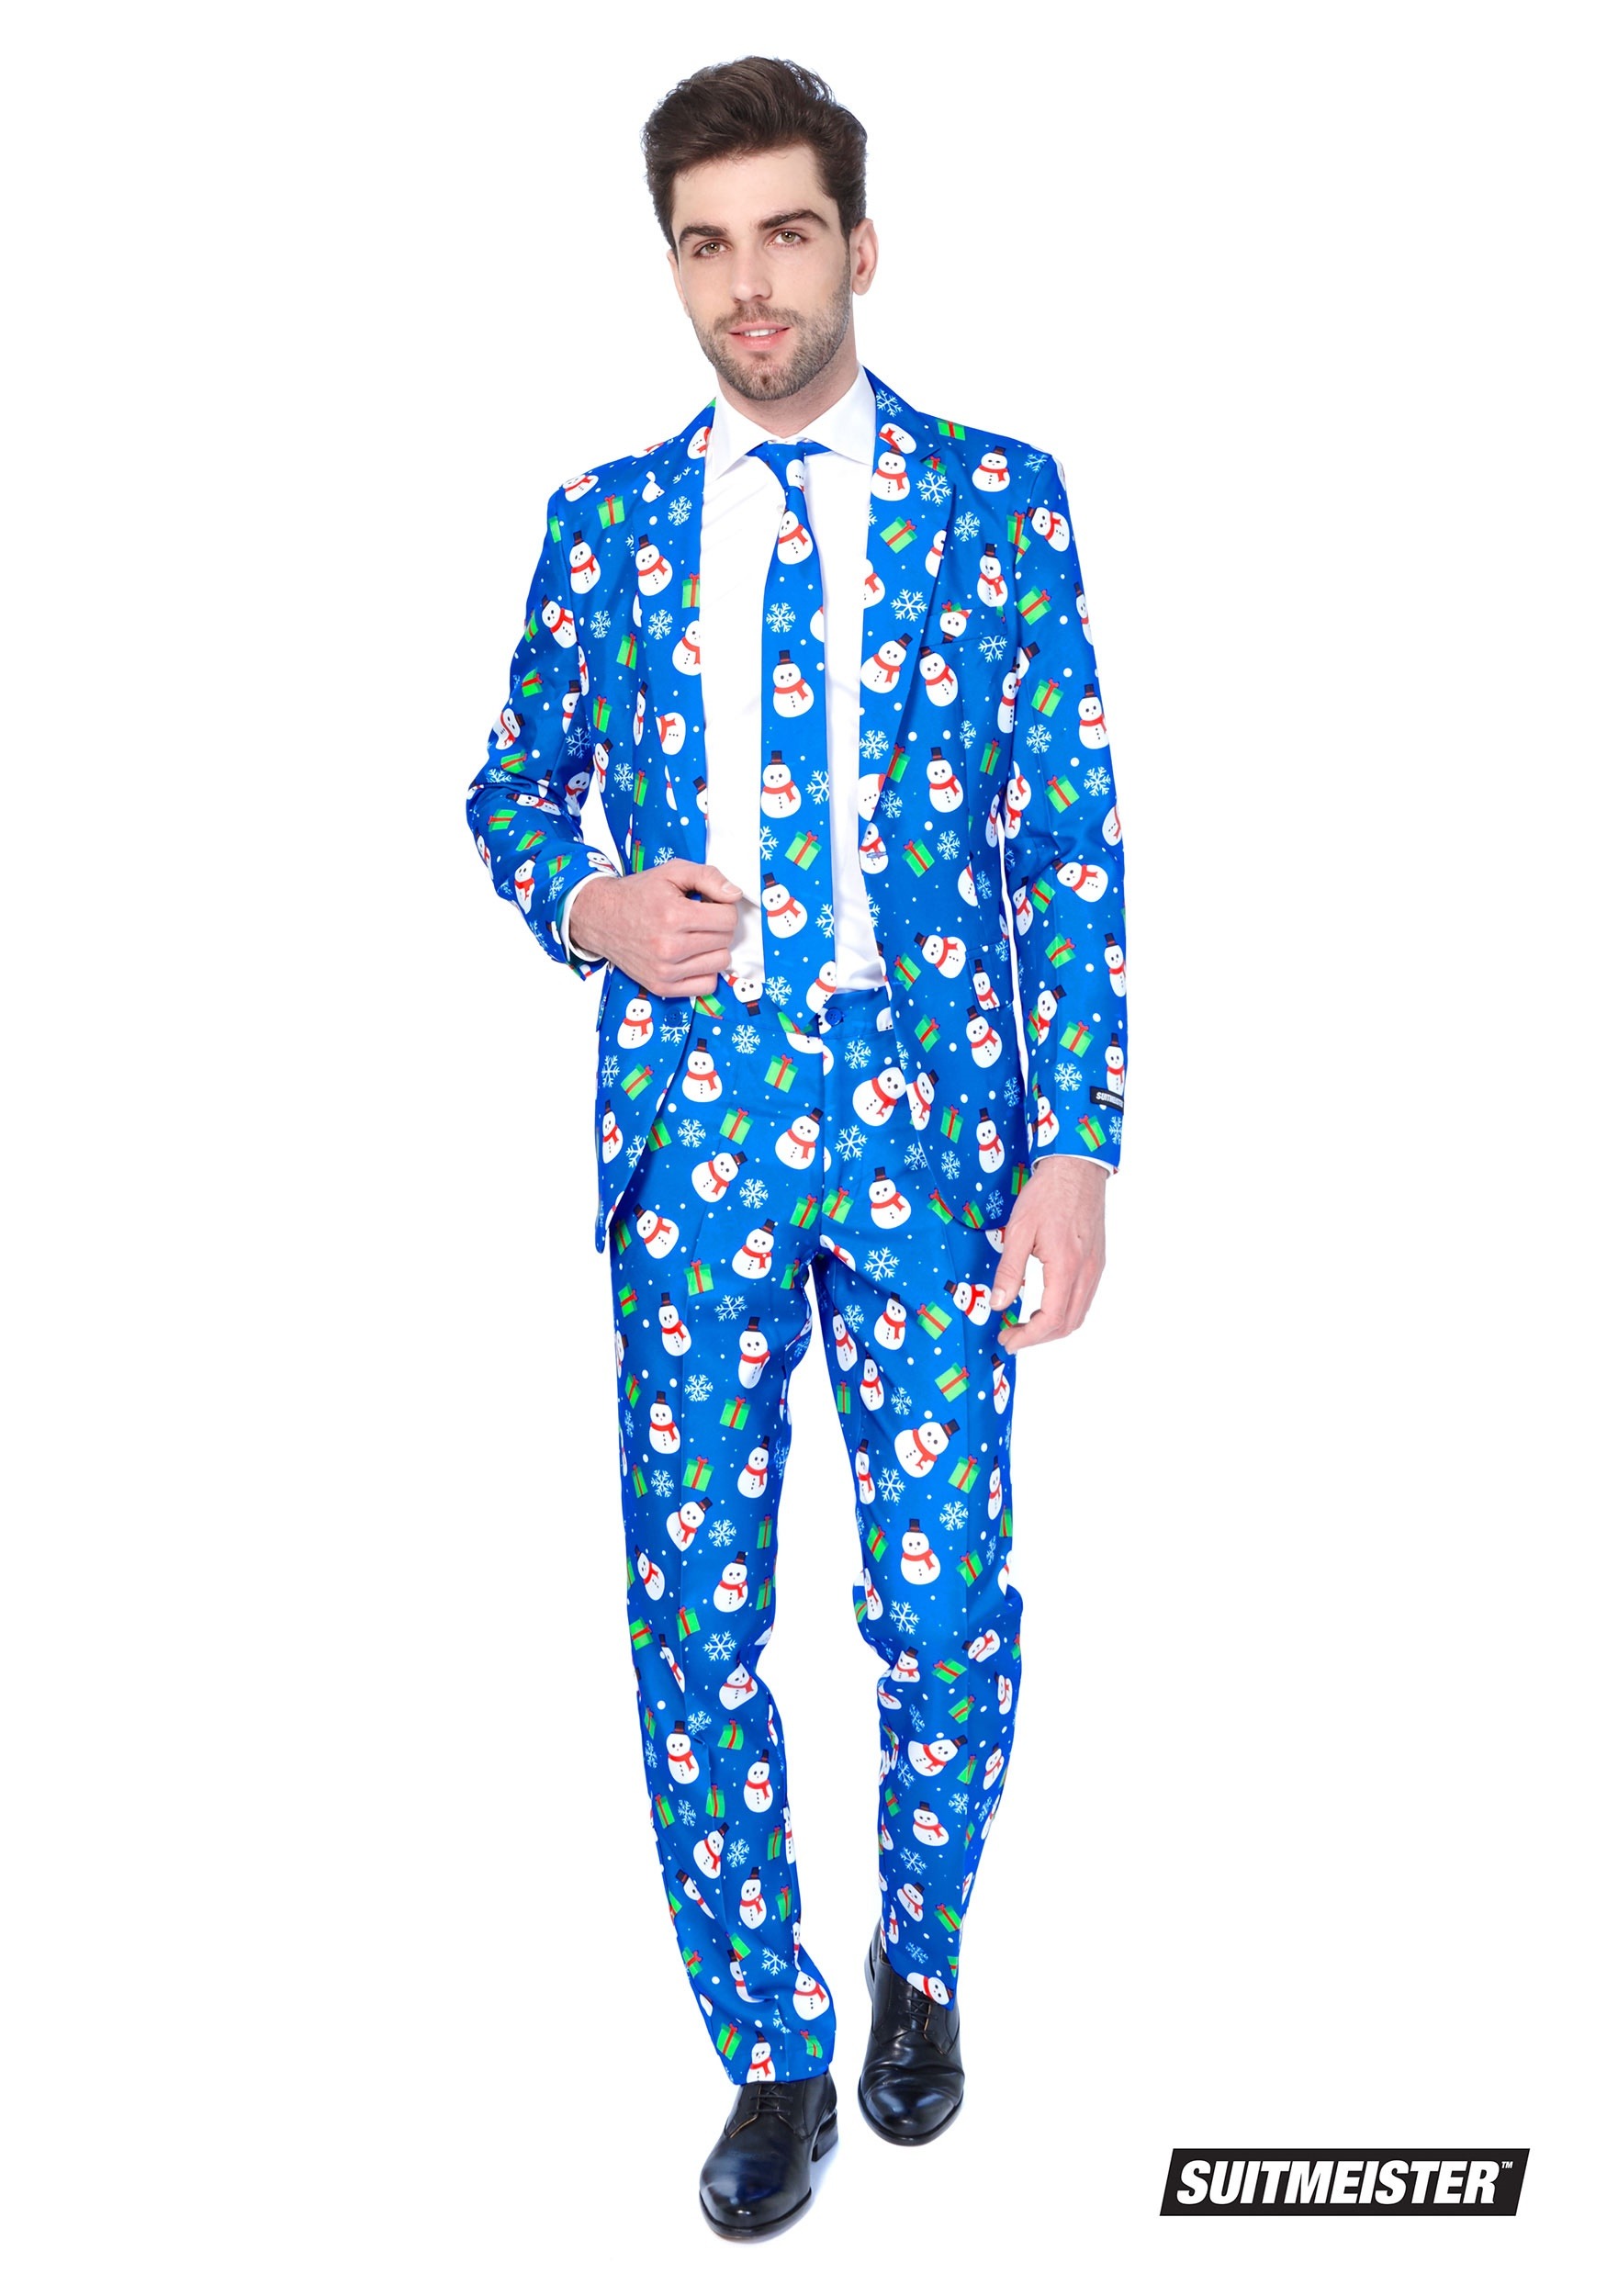 Blue Snowman Men’s Suitmeister Suit